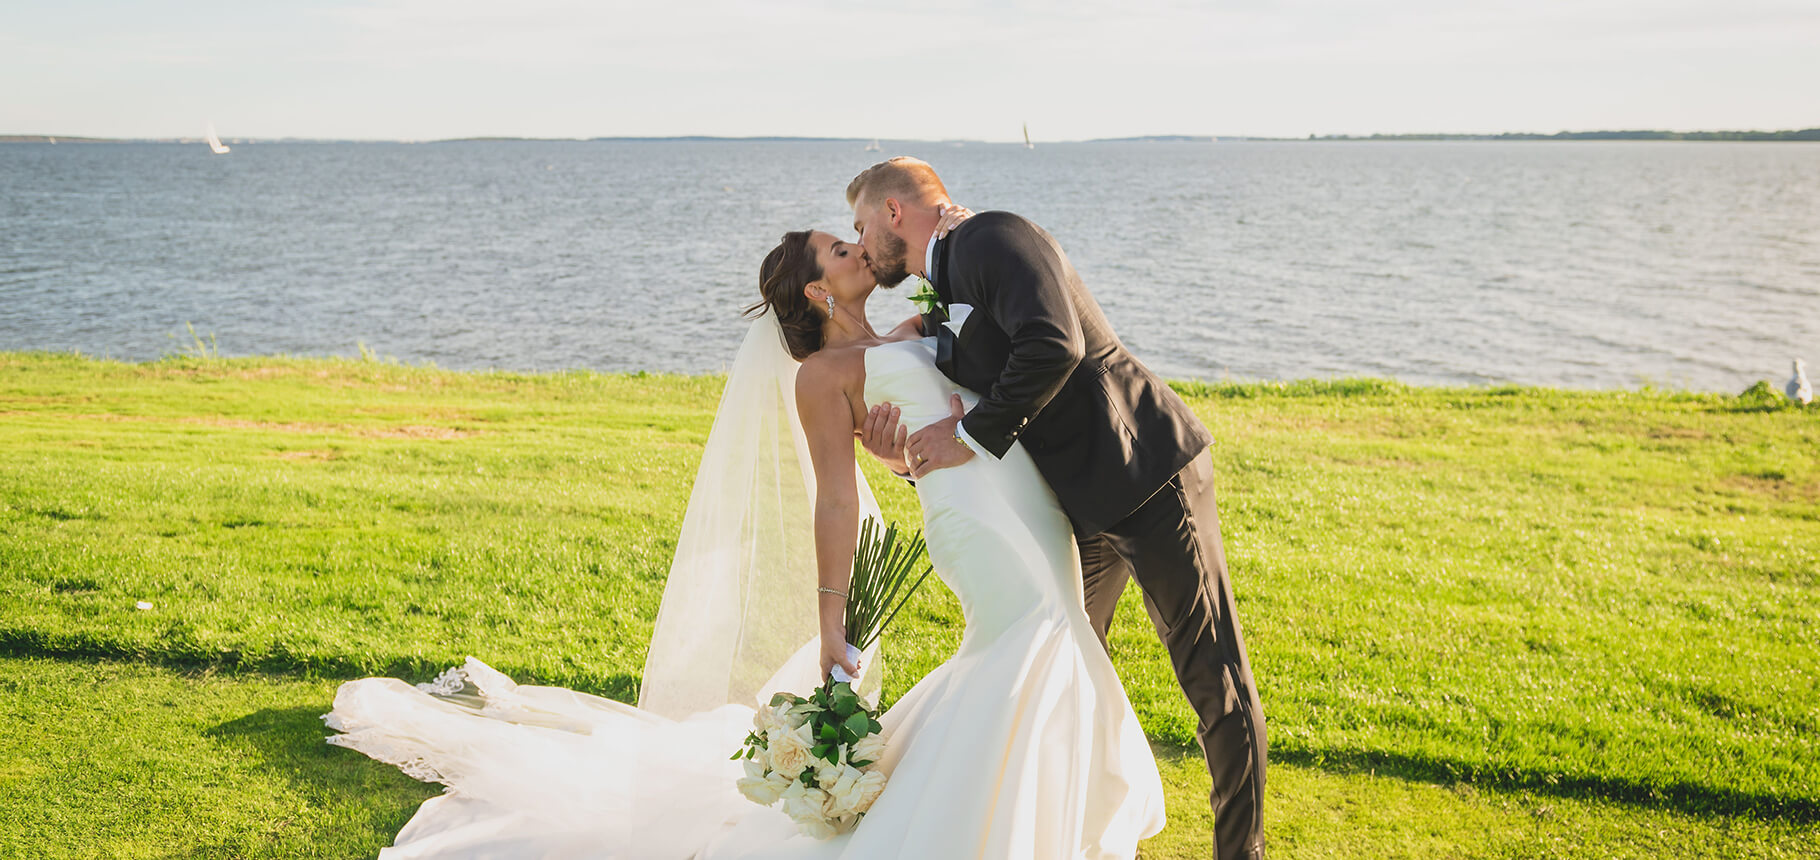 Groom kisses bride at seaside overlook